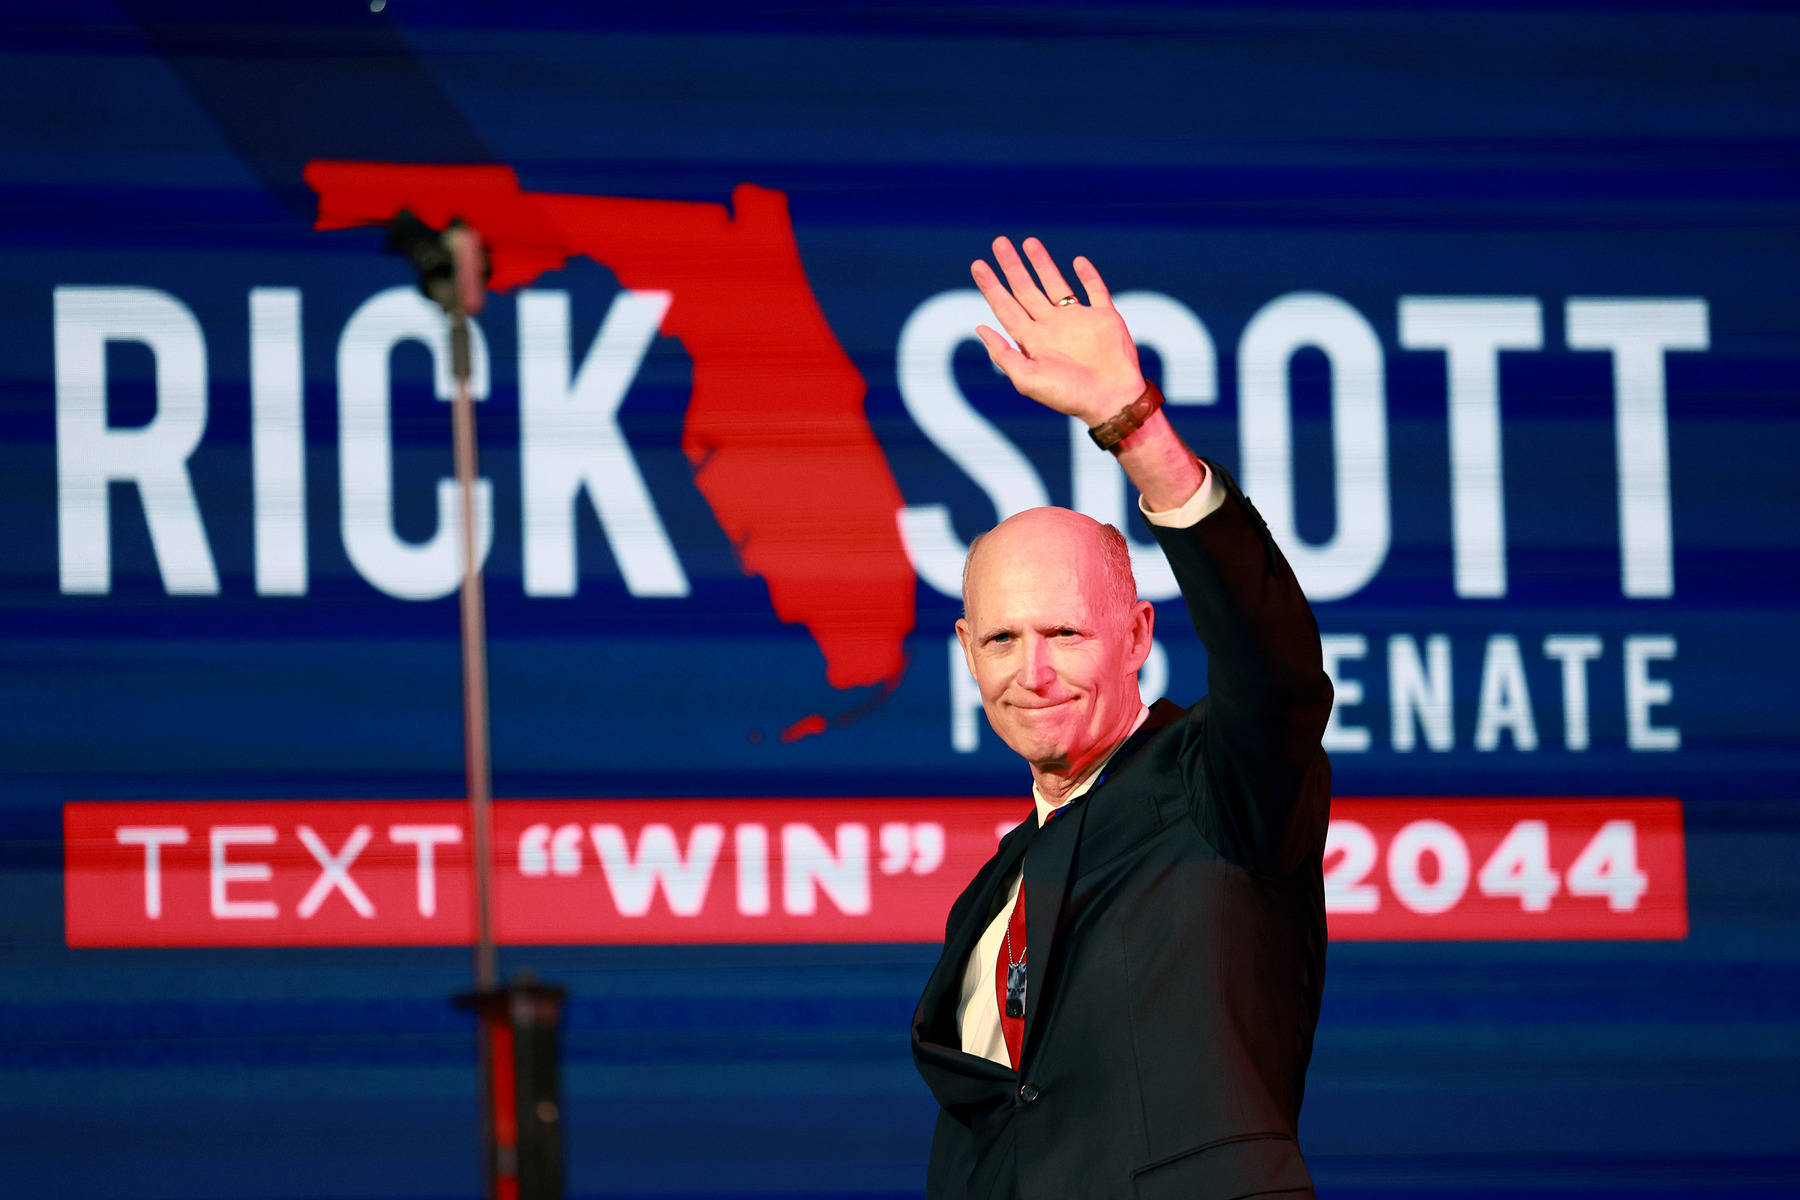 Sen. Rick Scott waves at a crowd during an event.